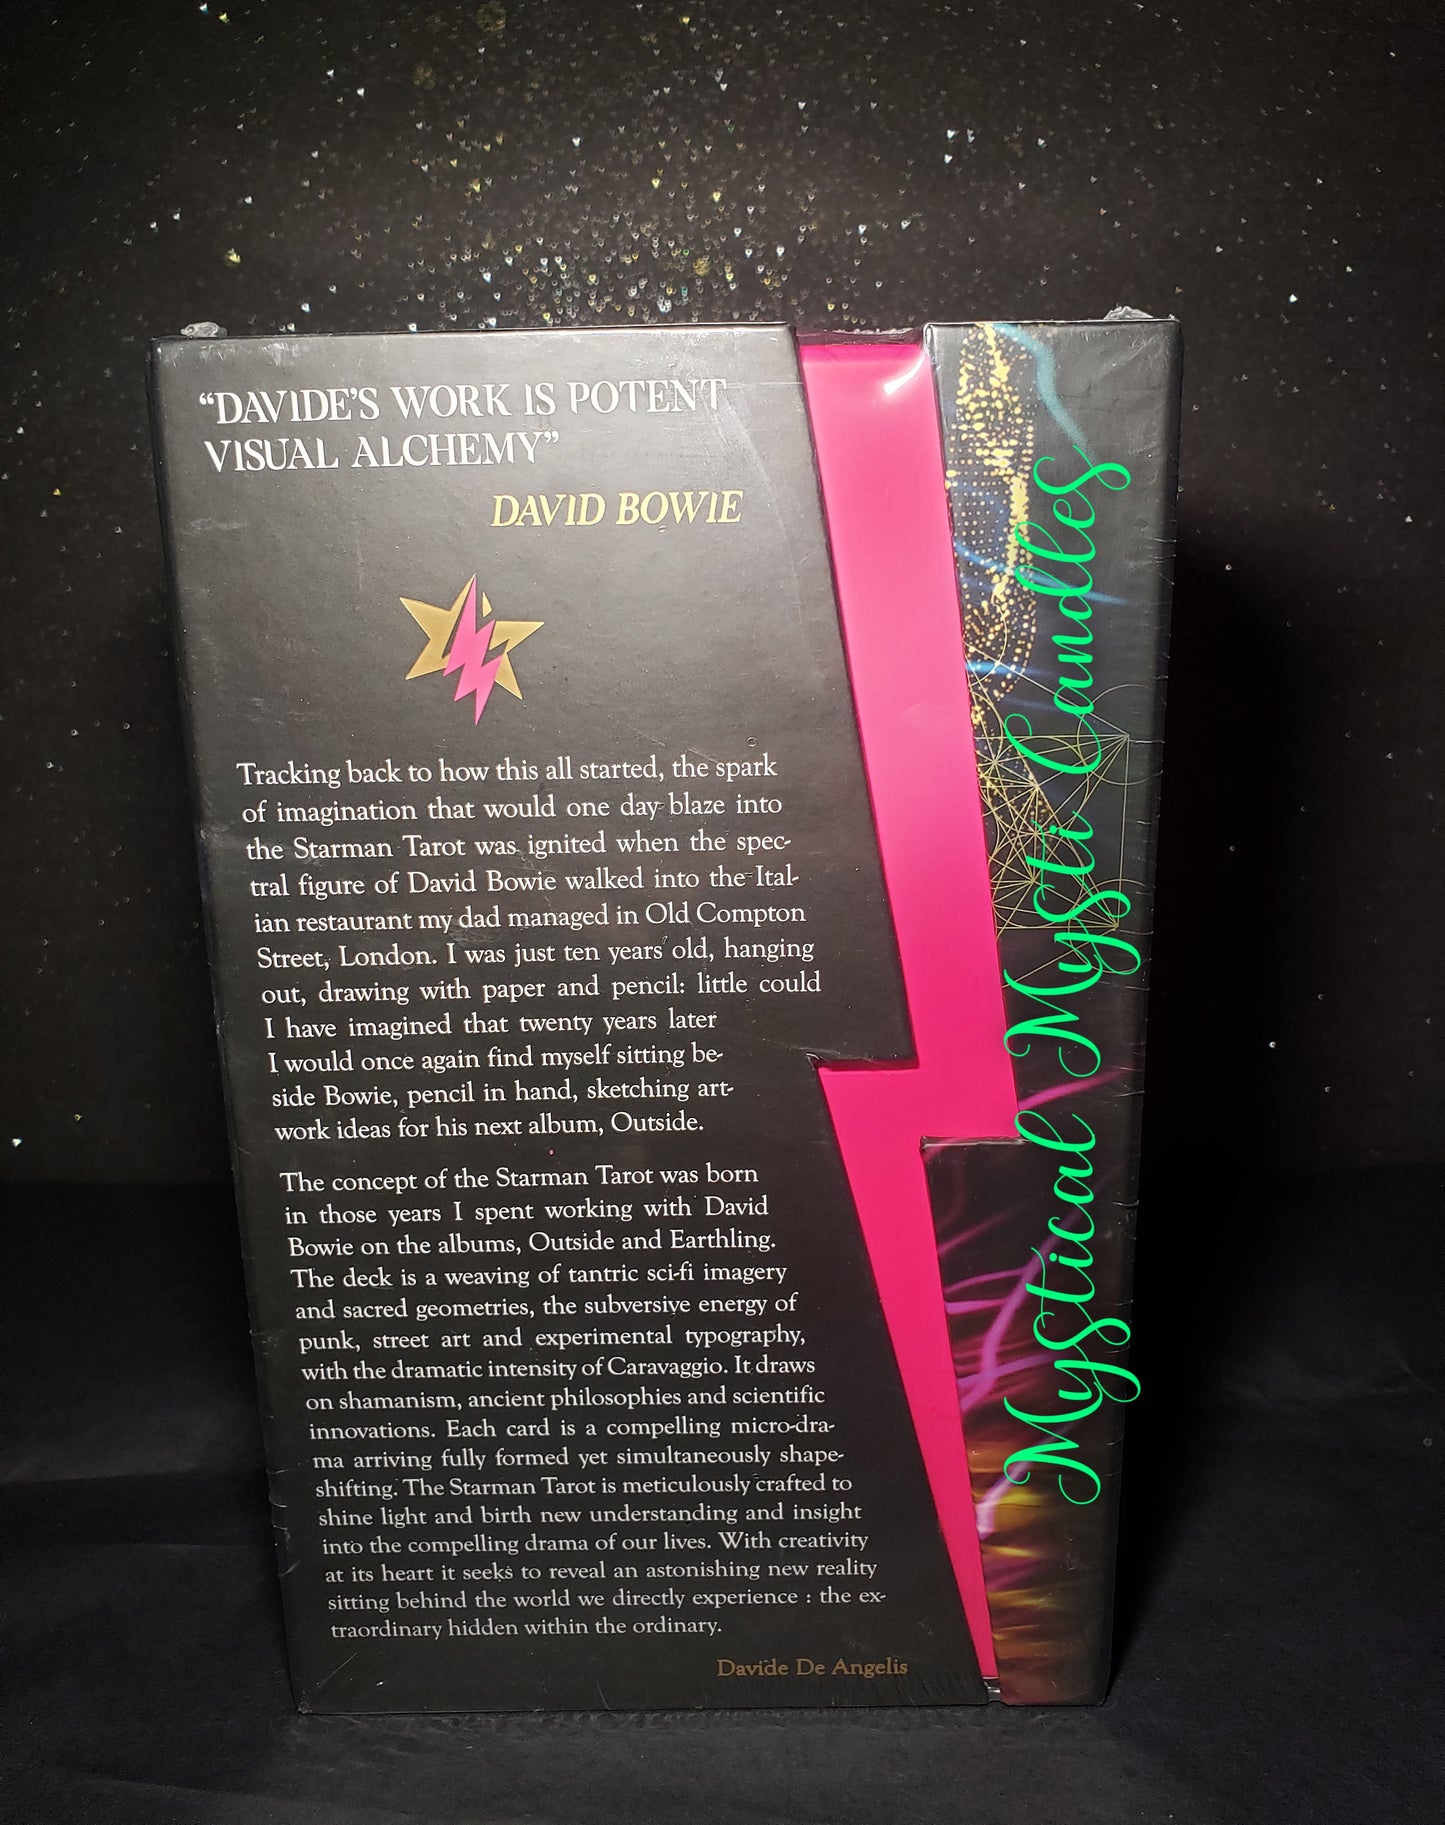 Starman Tarot & Tarot Card Bag